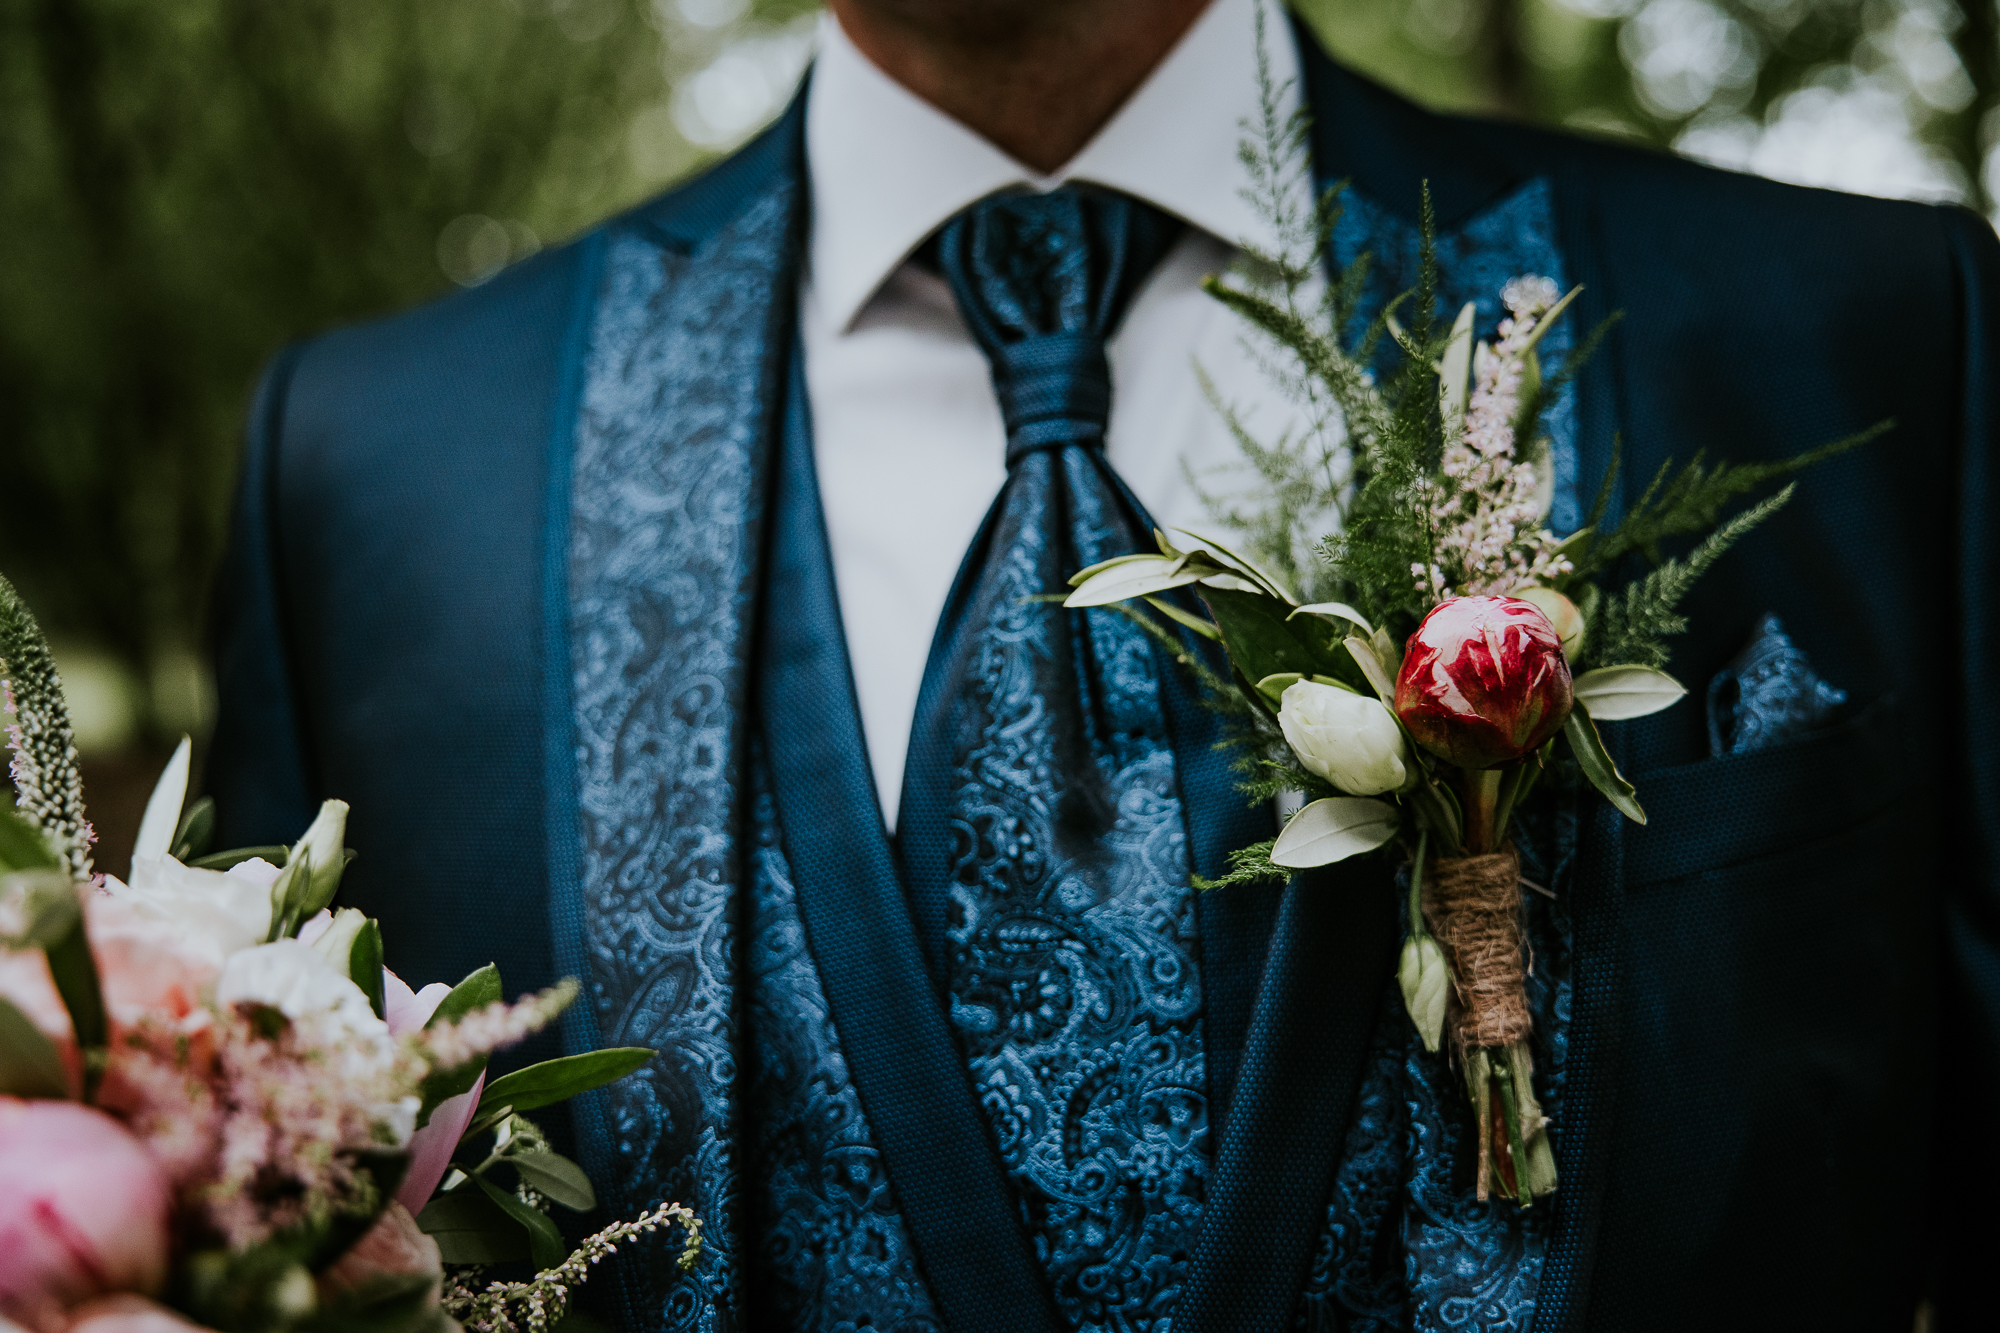 De corsage van de bruidegom is gemaakt door Blomke van Romke. Bruiloftsfotografie door bruiloftsfotograaf Nickie Fotografie uit Dokkum, Friesland.